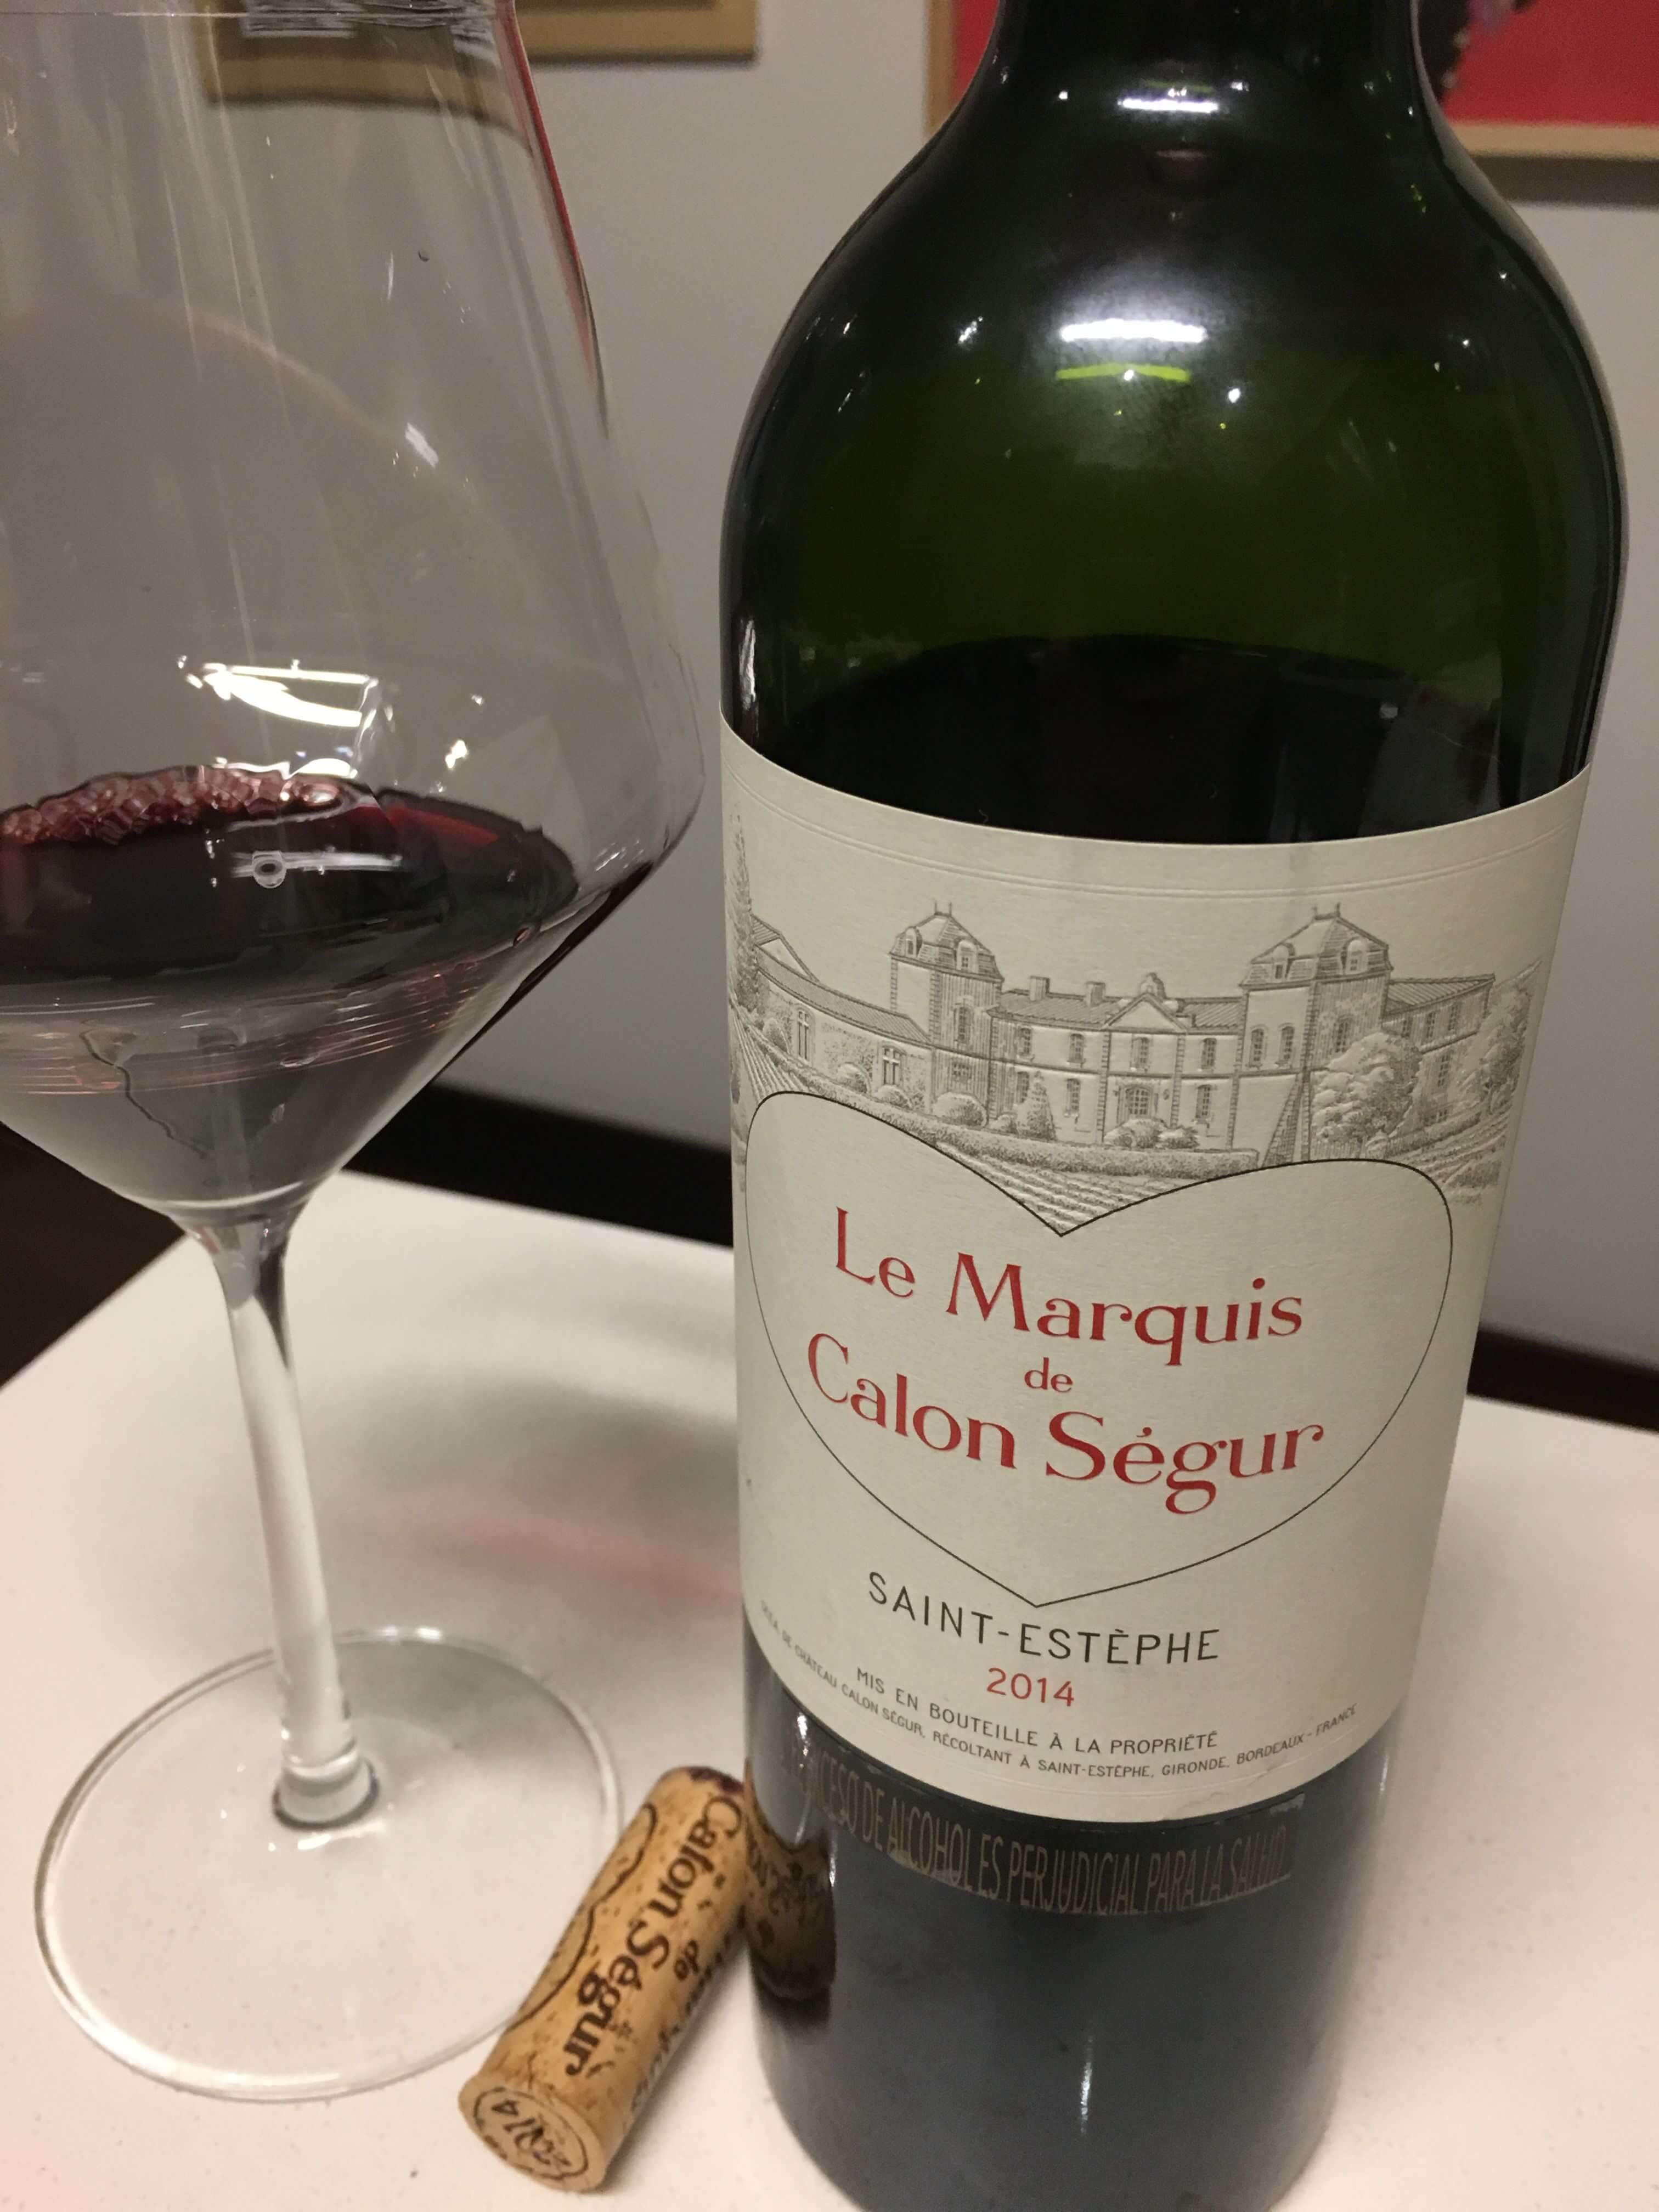 Le Marquis de Calon Ségur 2014 |2014凱隆世家副牌6支裝（無雕刻） - Design Your Own Wine